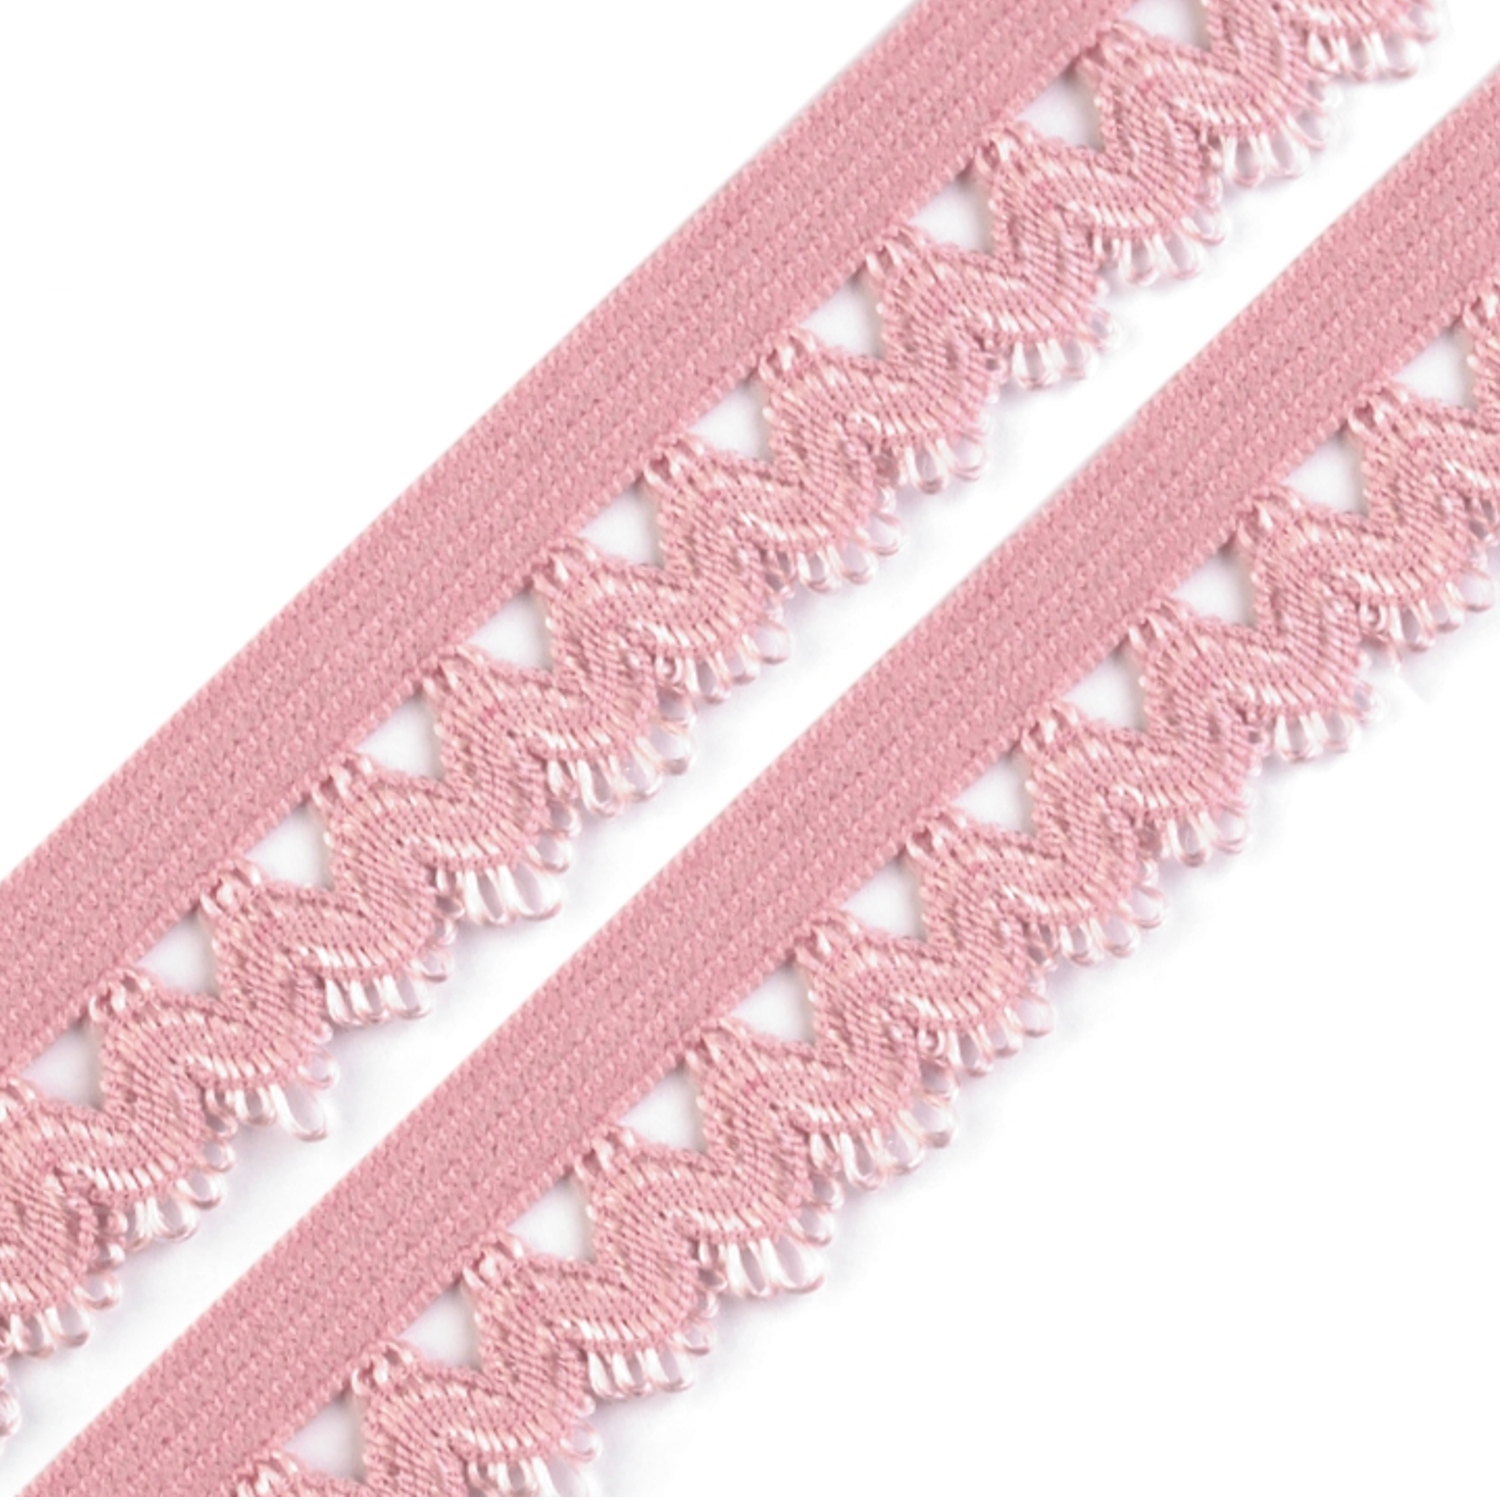 Rüschengummi - 15mm - Pink (dunkel 15)